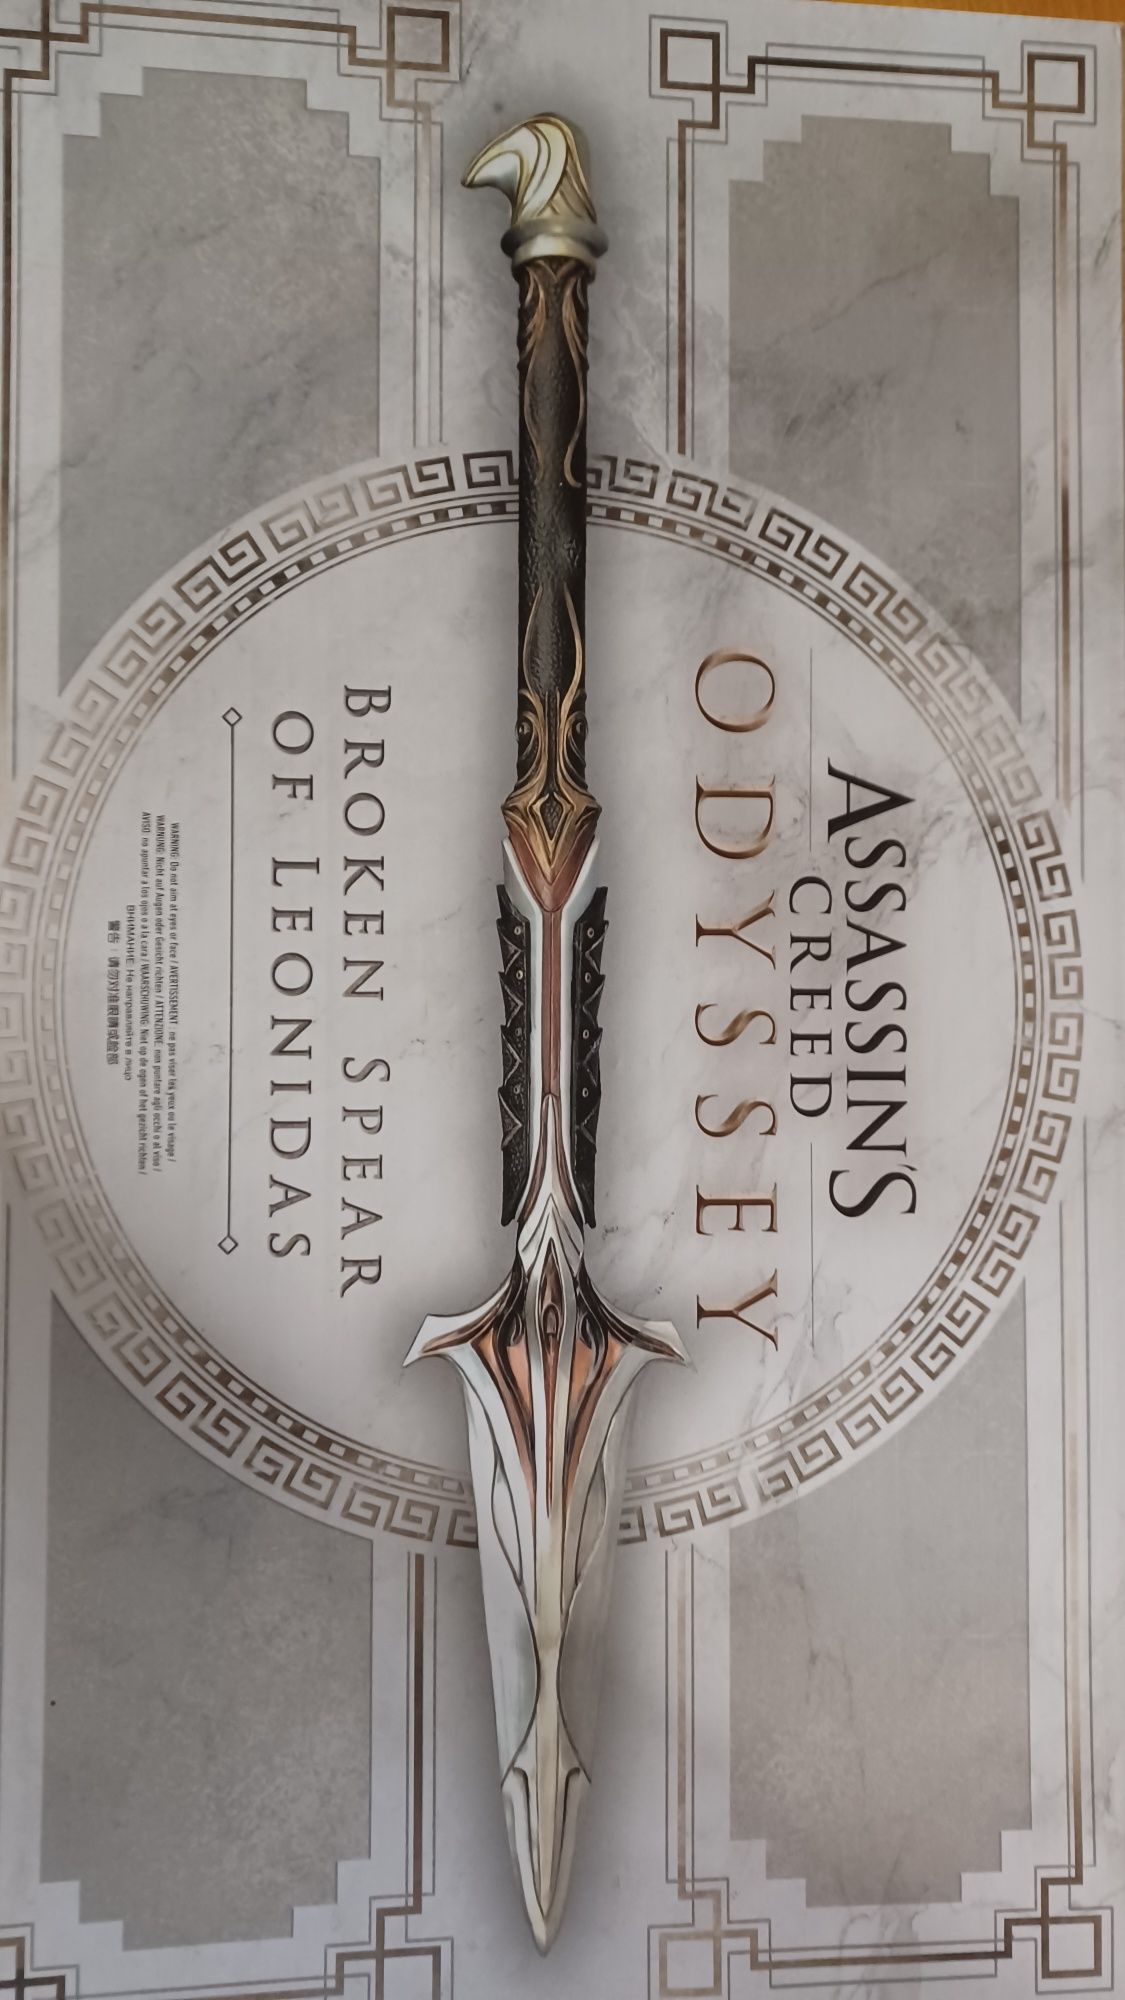 Assassins creed odyssey broken spear of leonidas